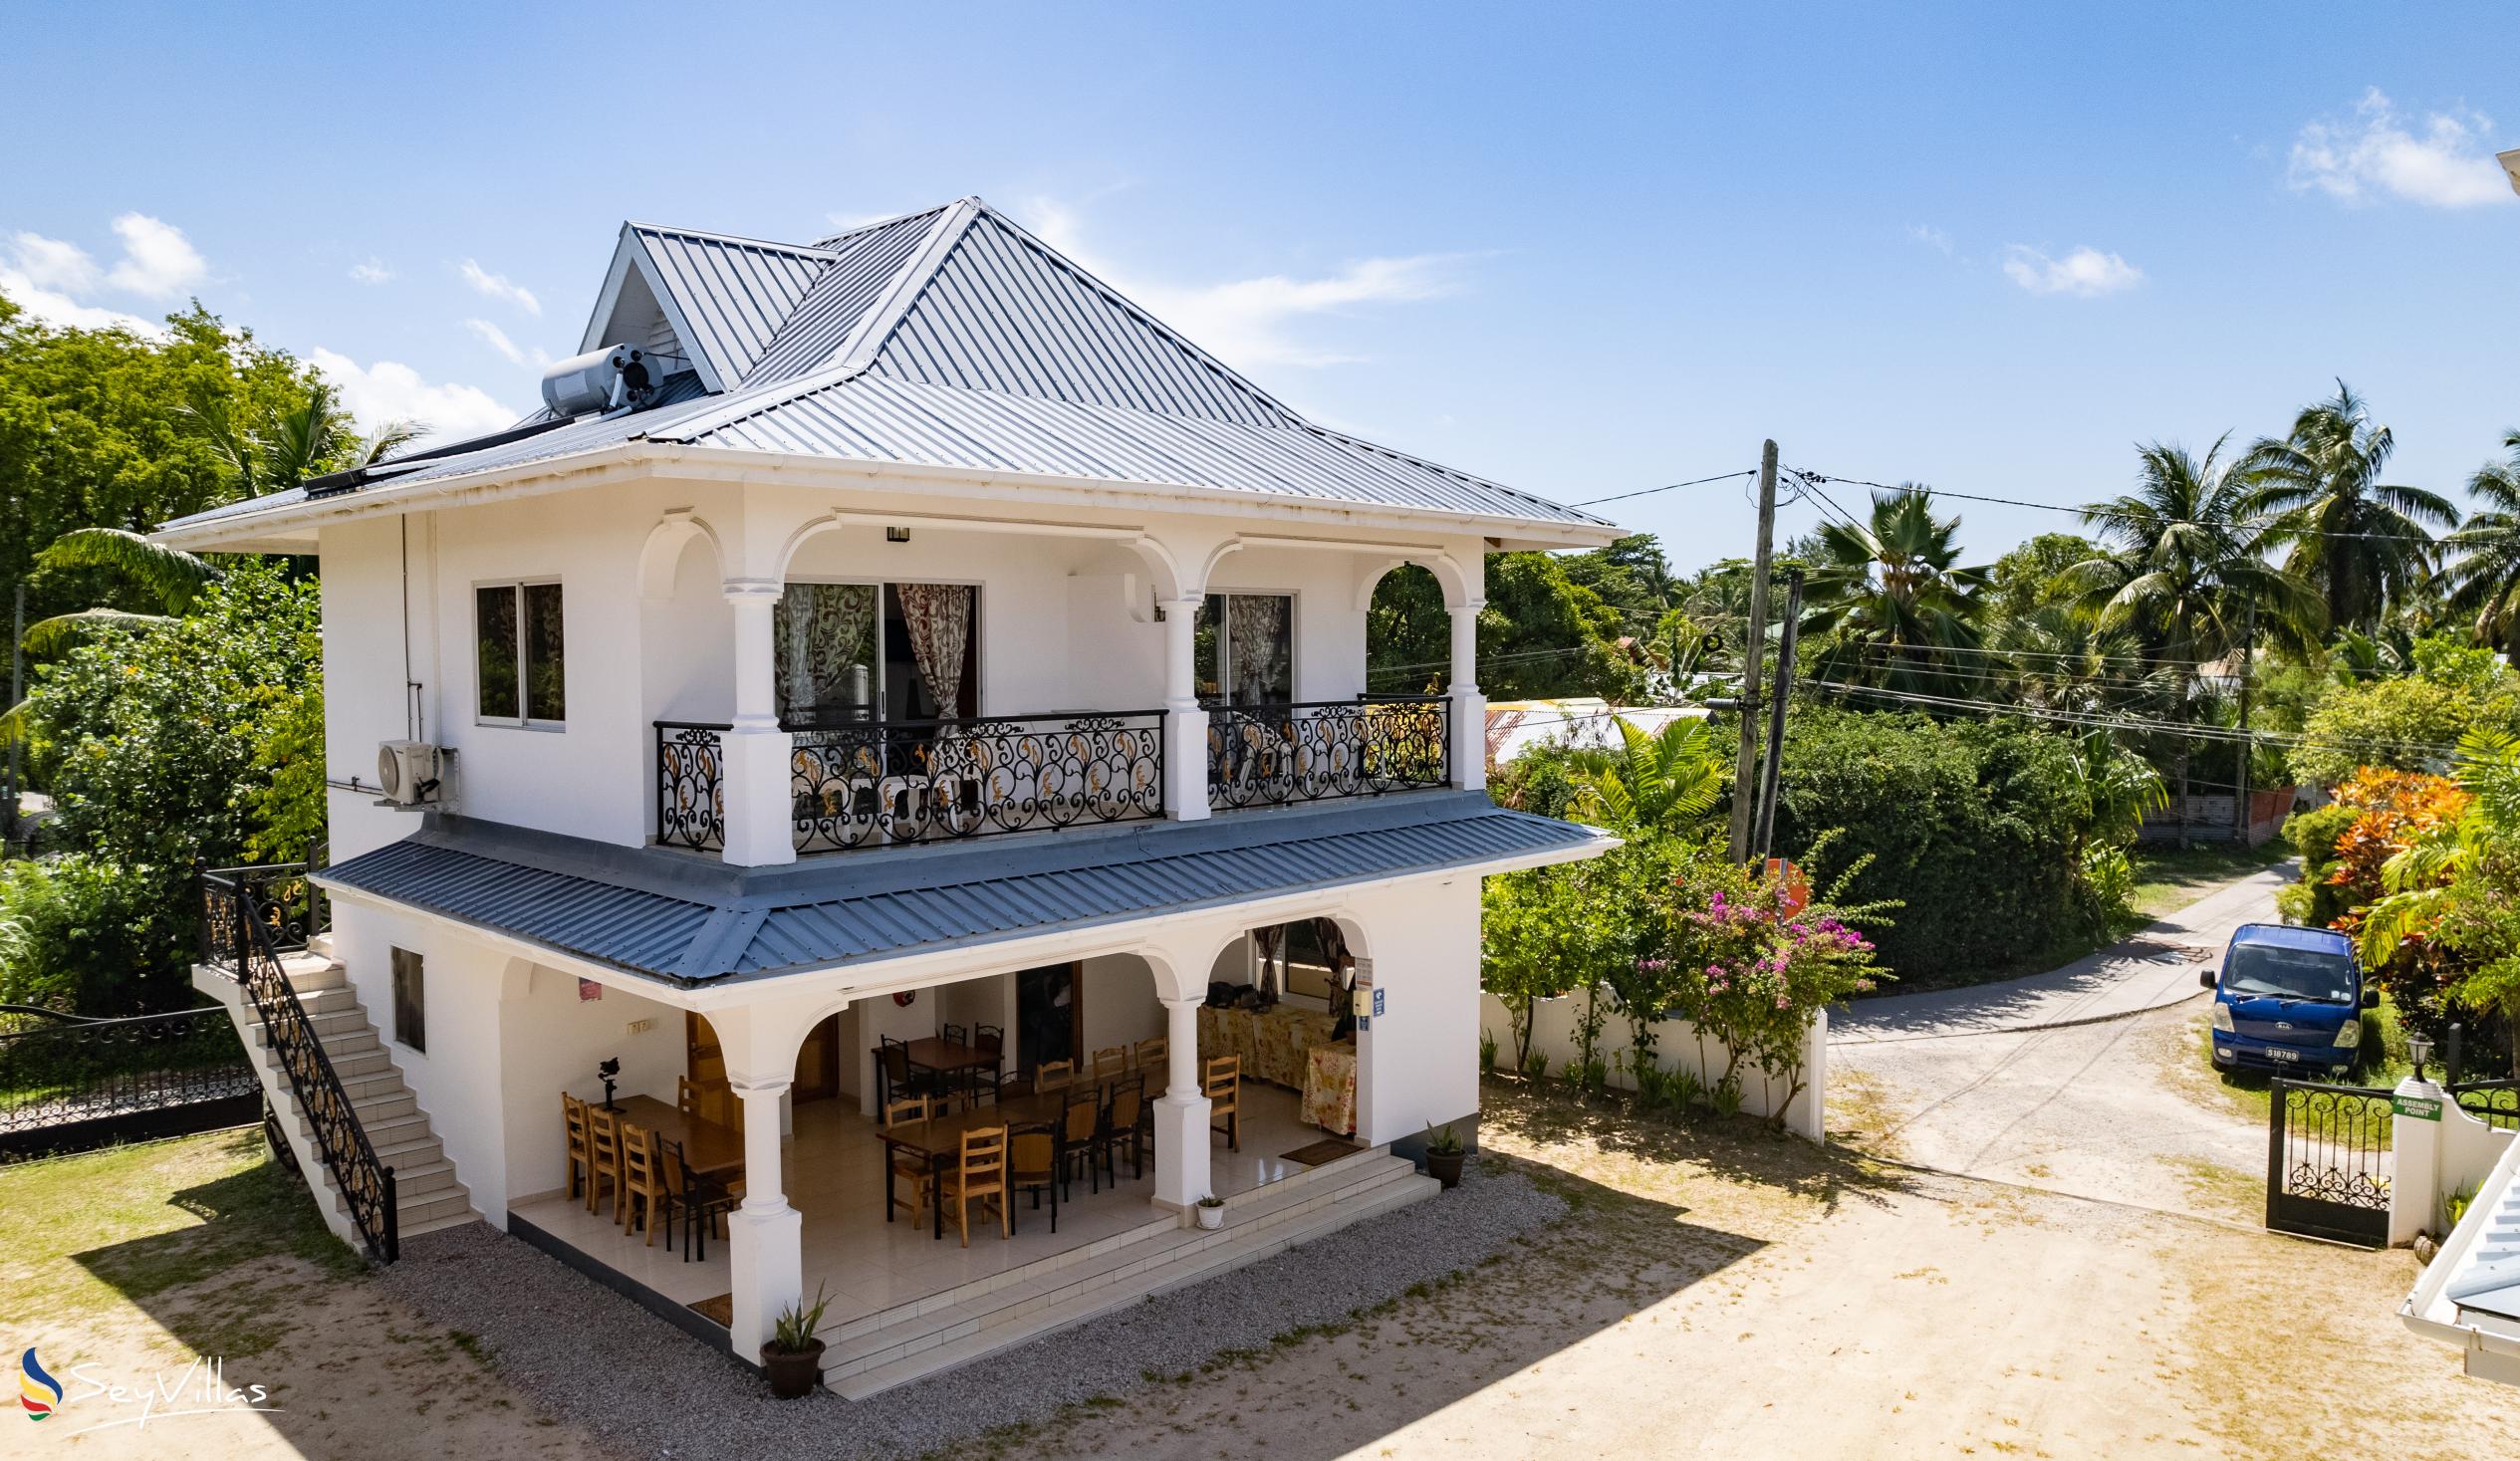 Foto 8: Casadani Luxury Guest House - Aussenbereich - Praslin (Seychellen)